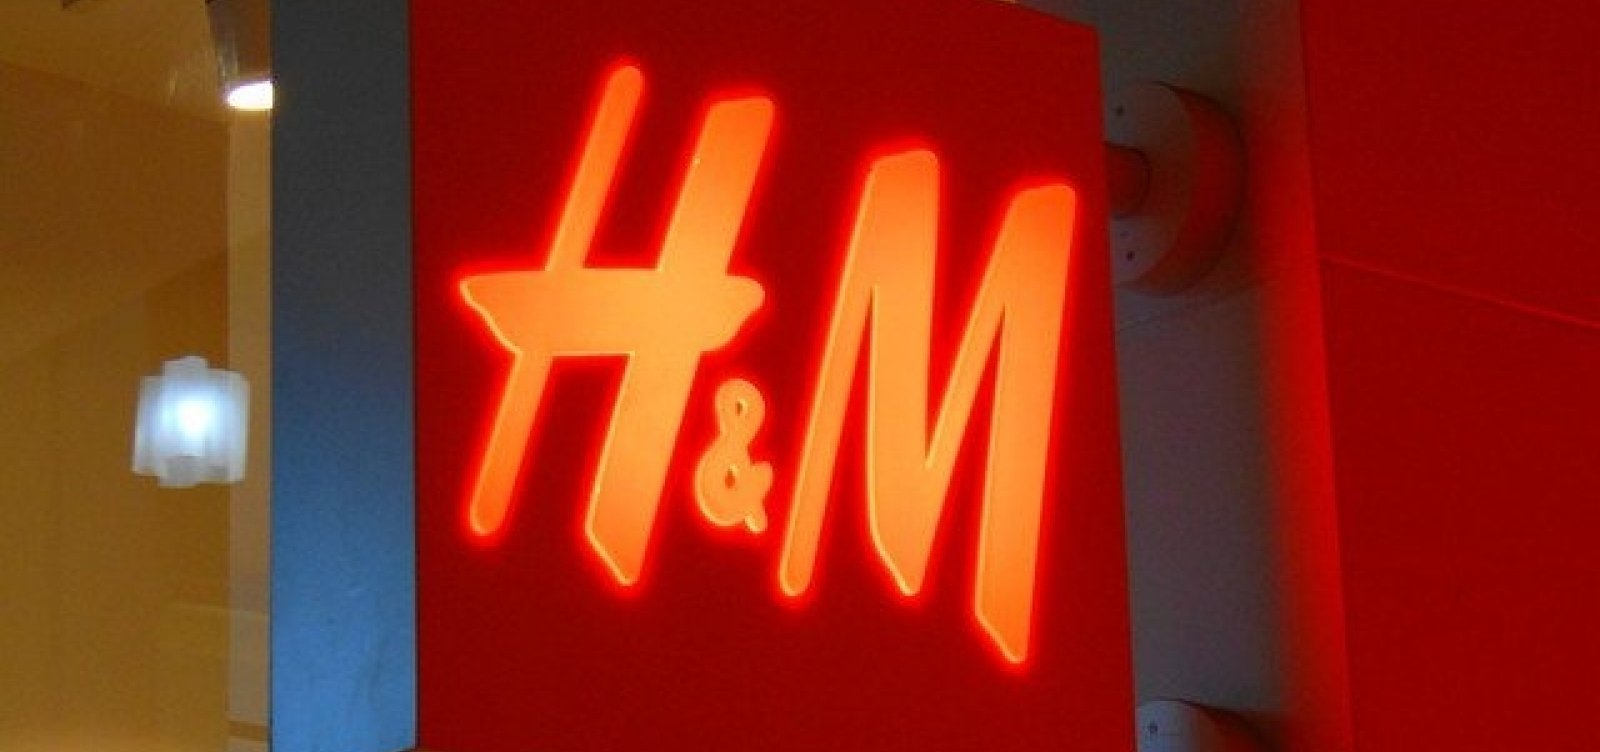 H&M suspende compra do couro brasileiro